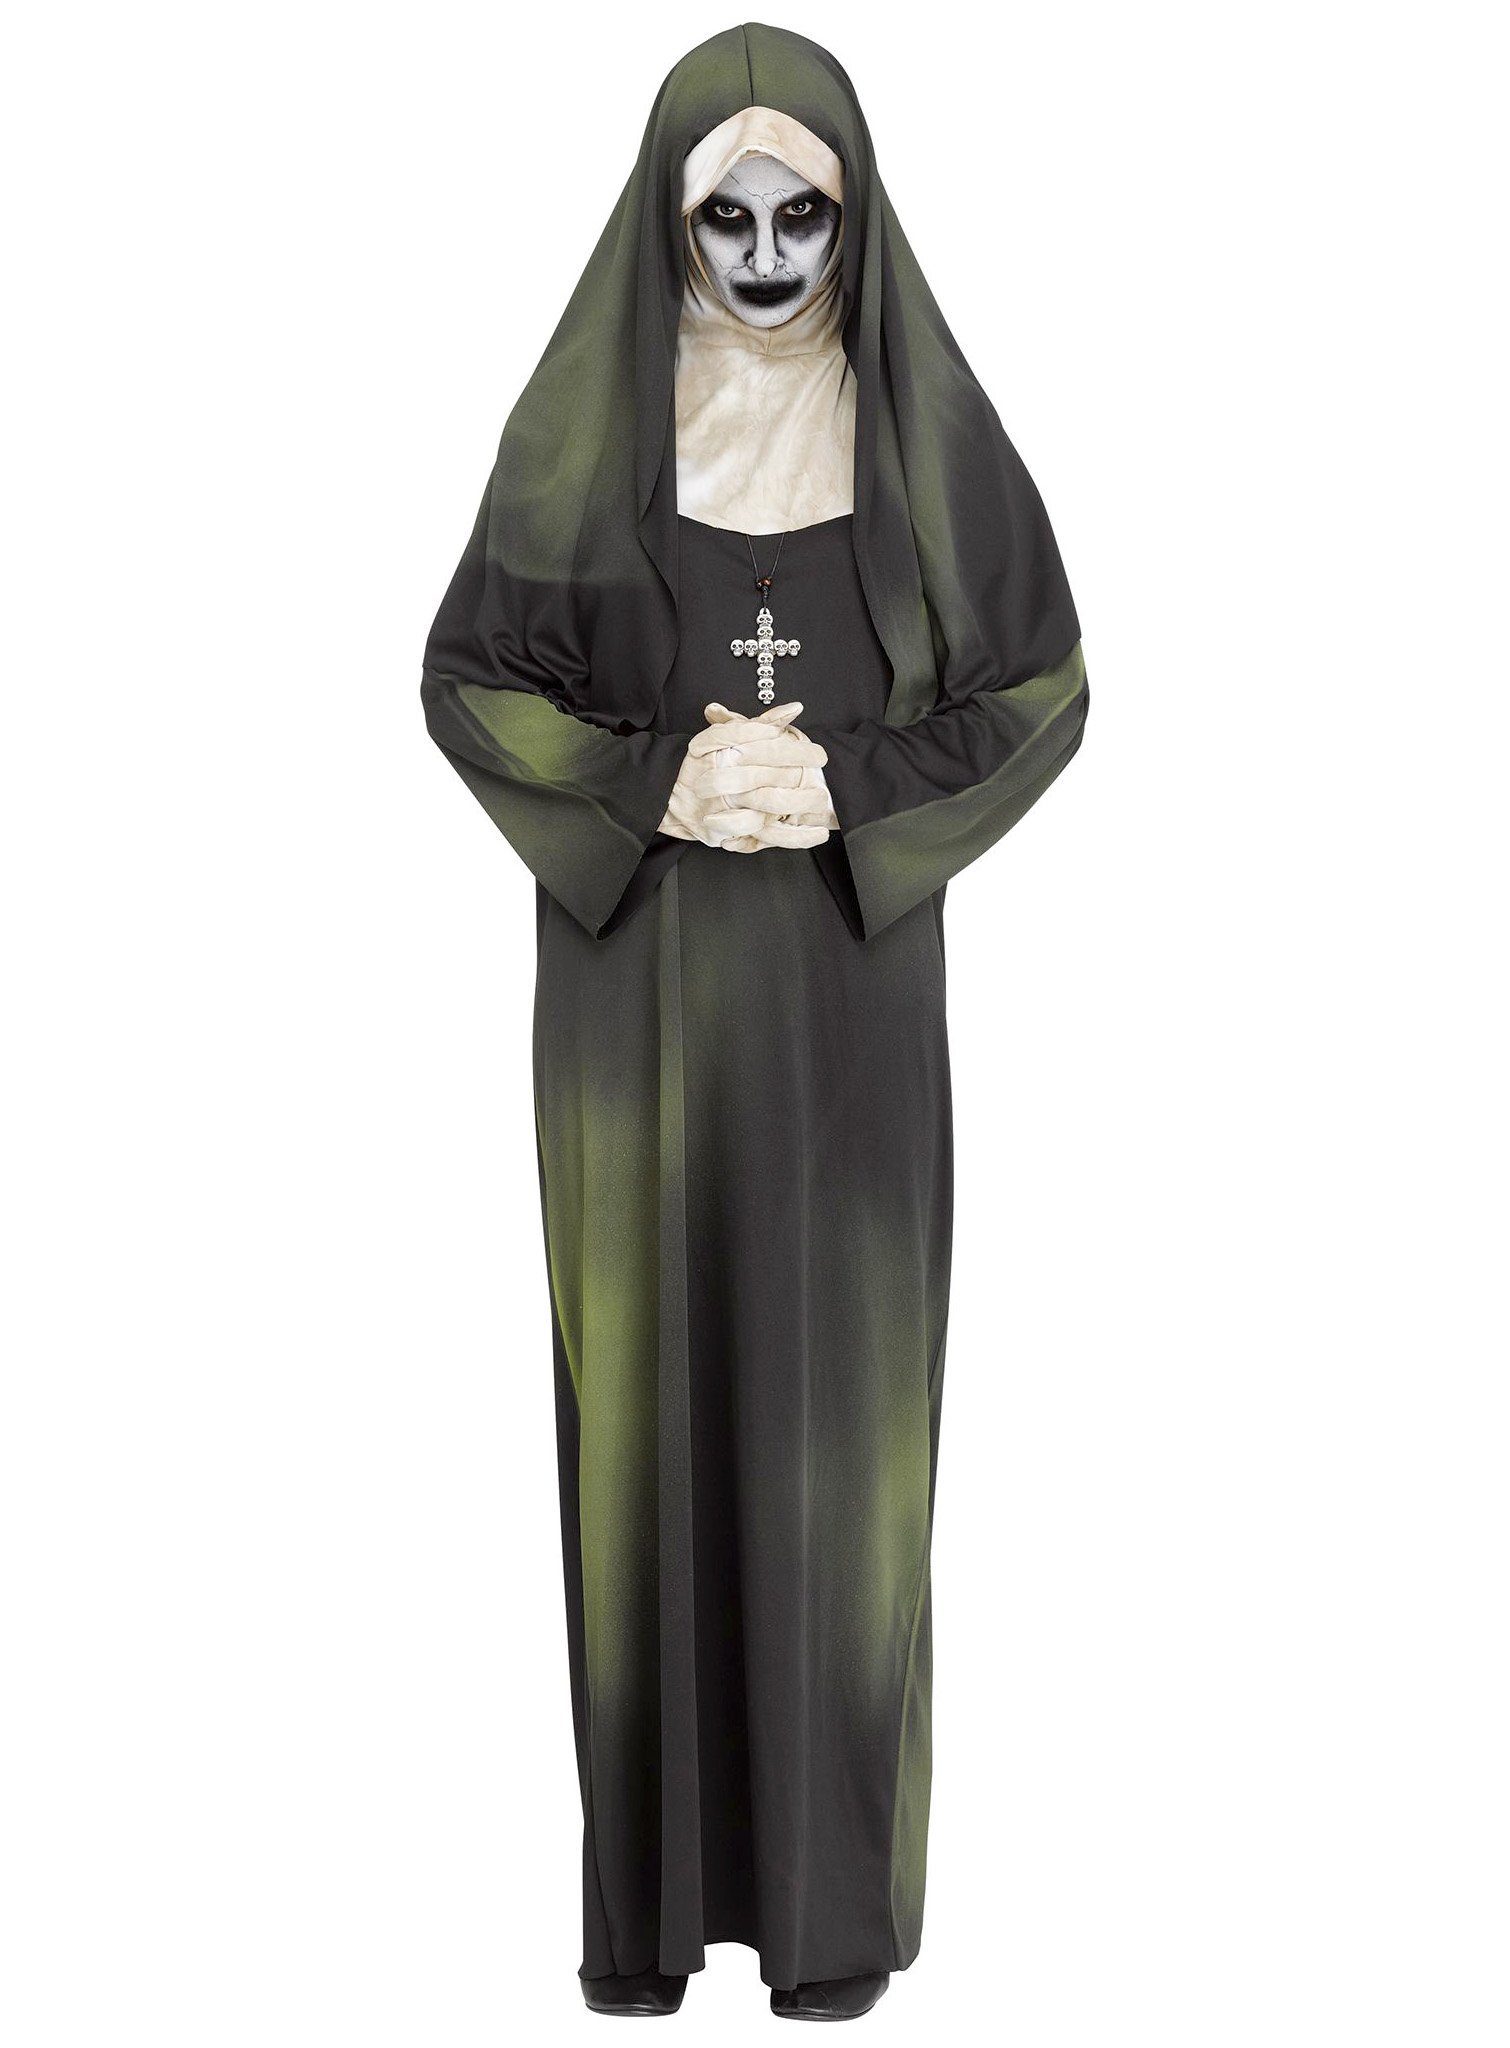 Fun World Kostüm Besessene Nonne Kostüm, Gruftig, giftig grün und gar nicht gottesfürchtig